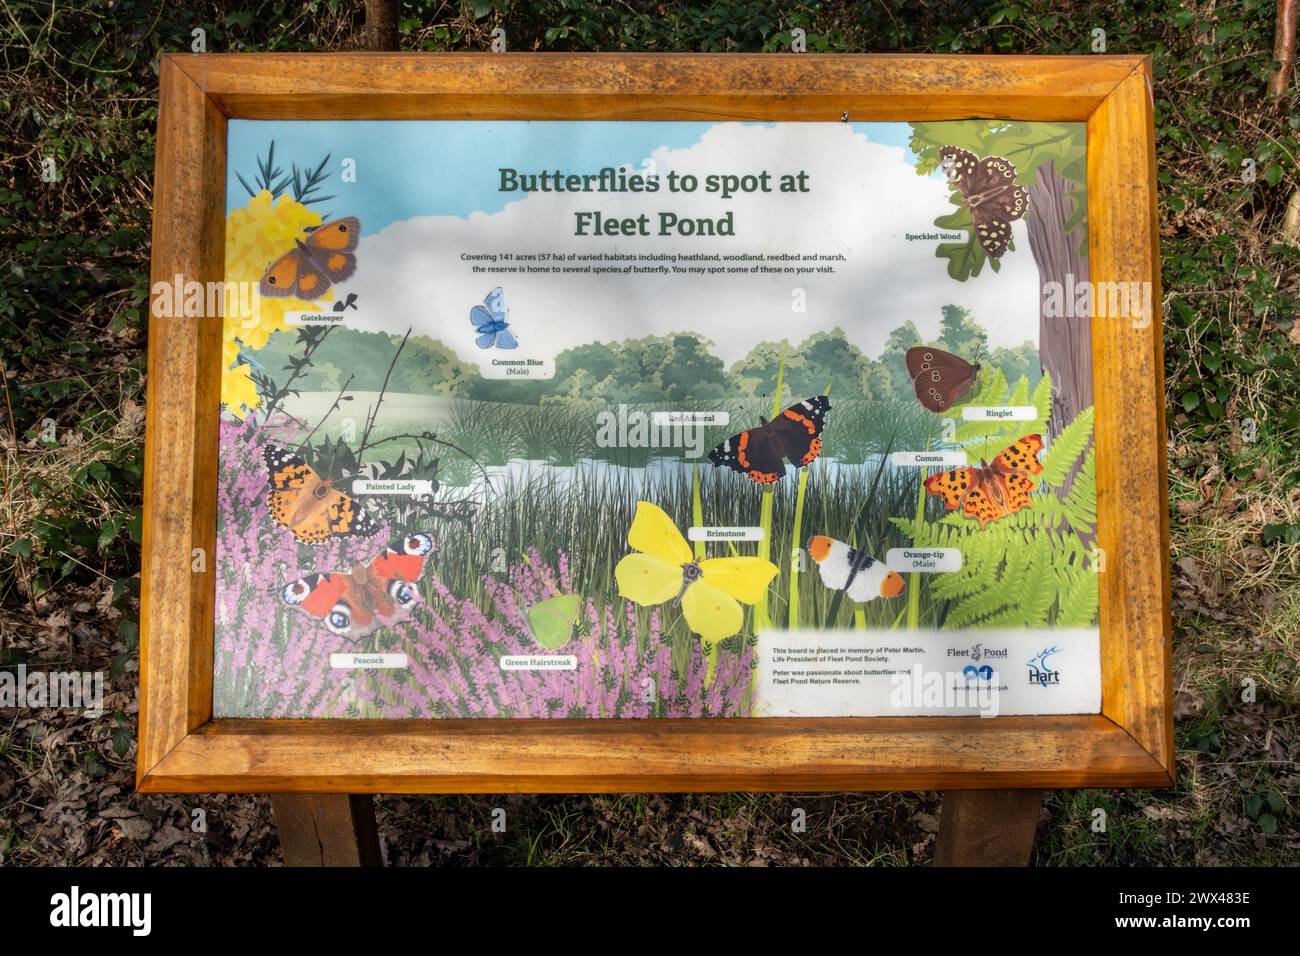 Bacheca informativa sulle farfalle da avvistare al Fleet Pond, una riserva naturale locale nell'Hampshire, Inghilterra, Regno Unito Foto Stock